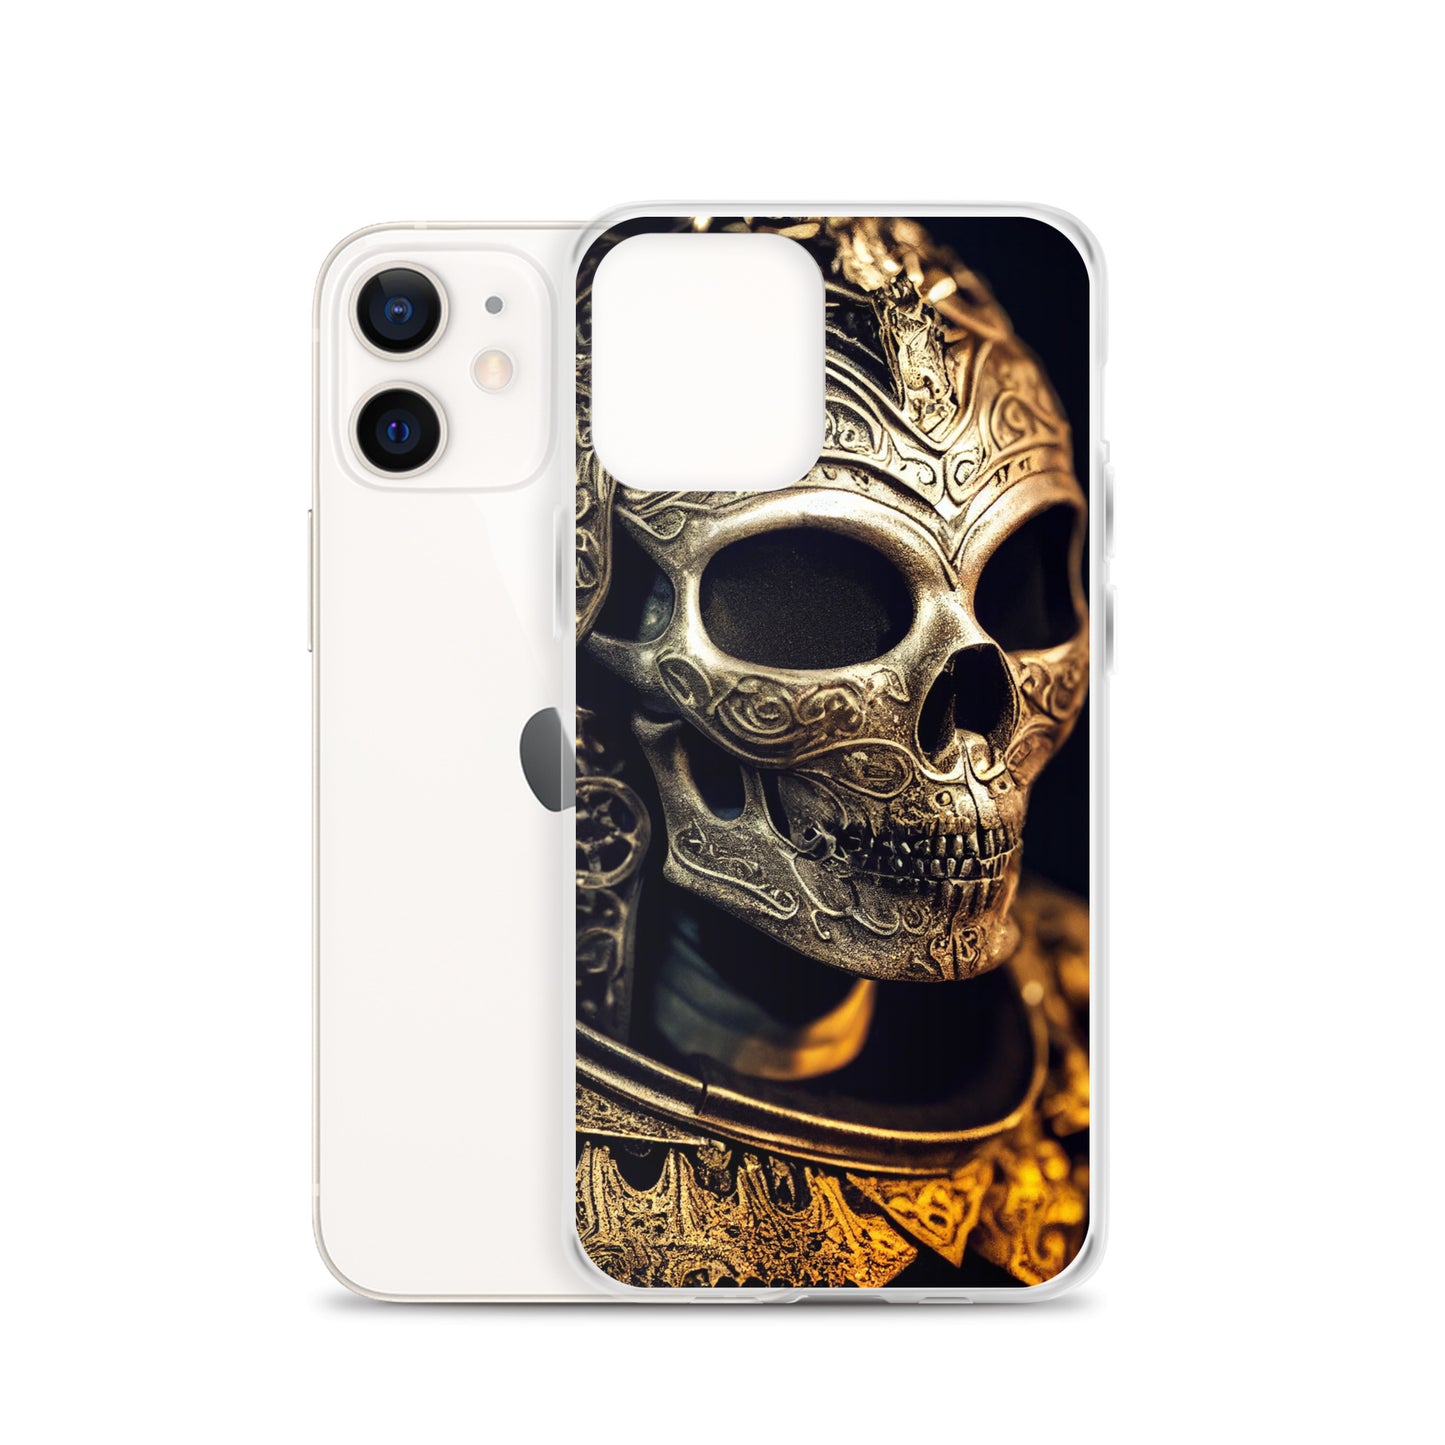 iPhone Case - Ornate Skull Armor